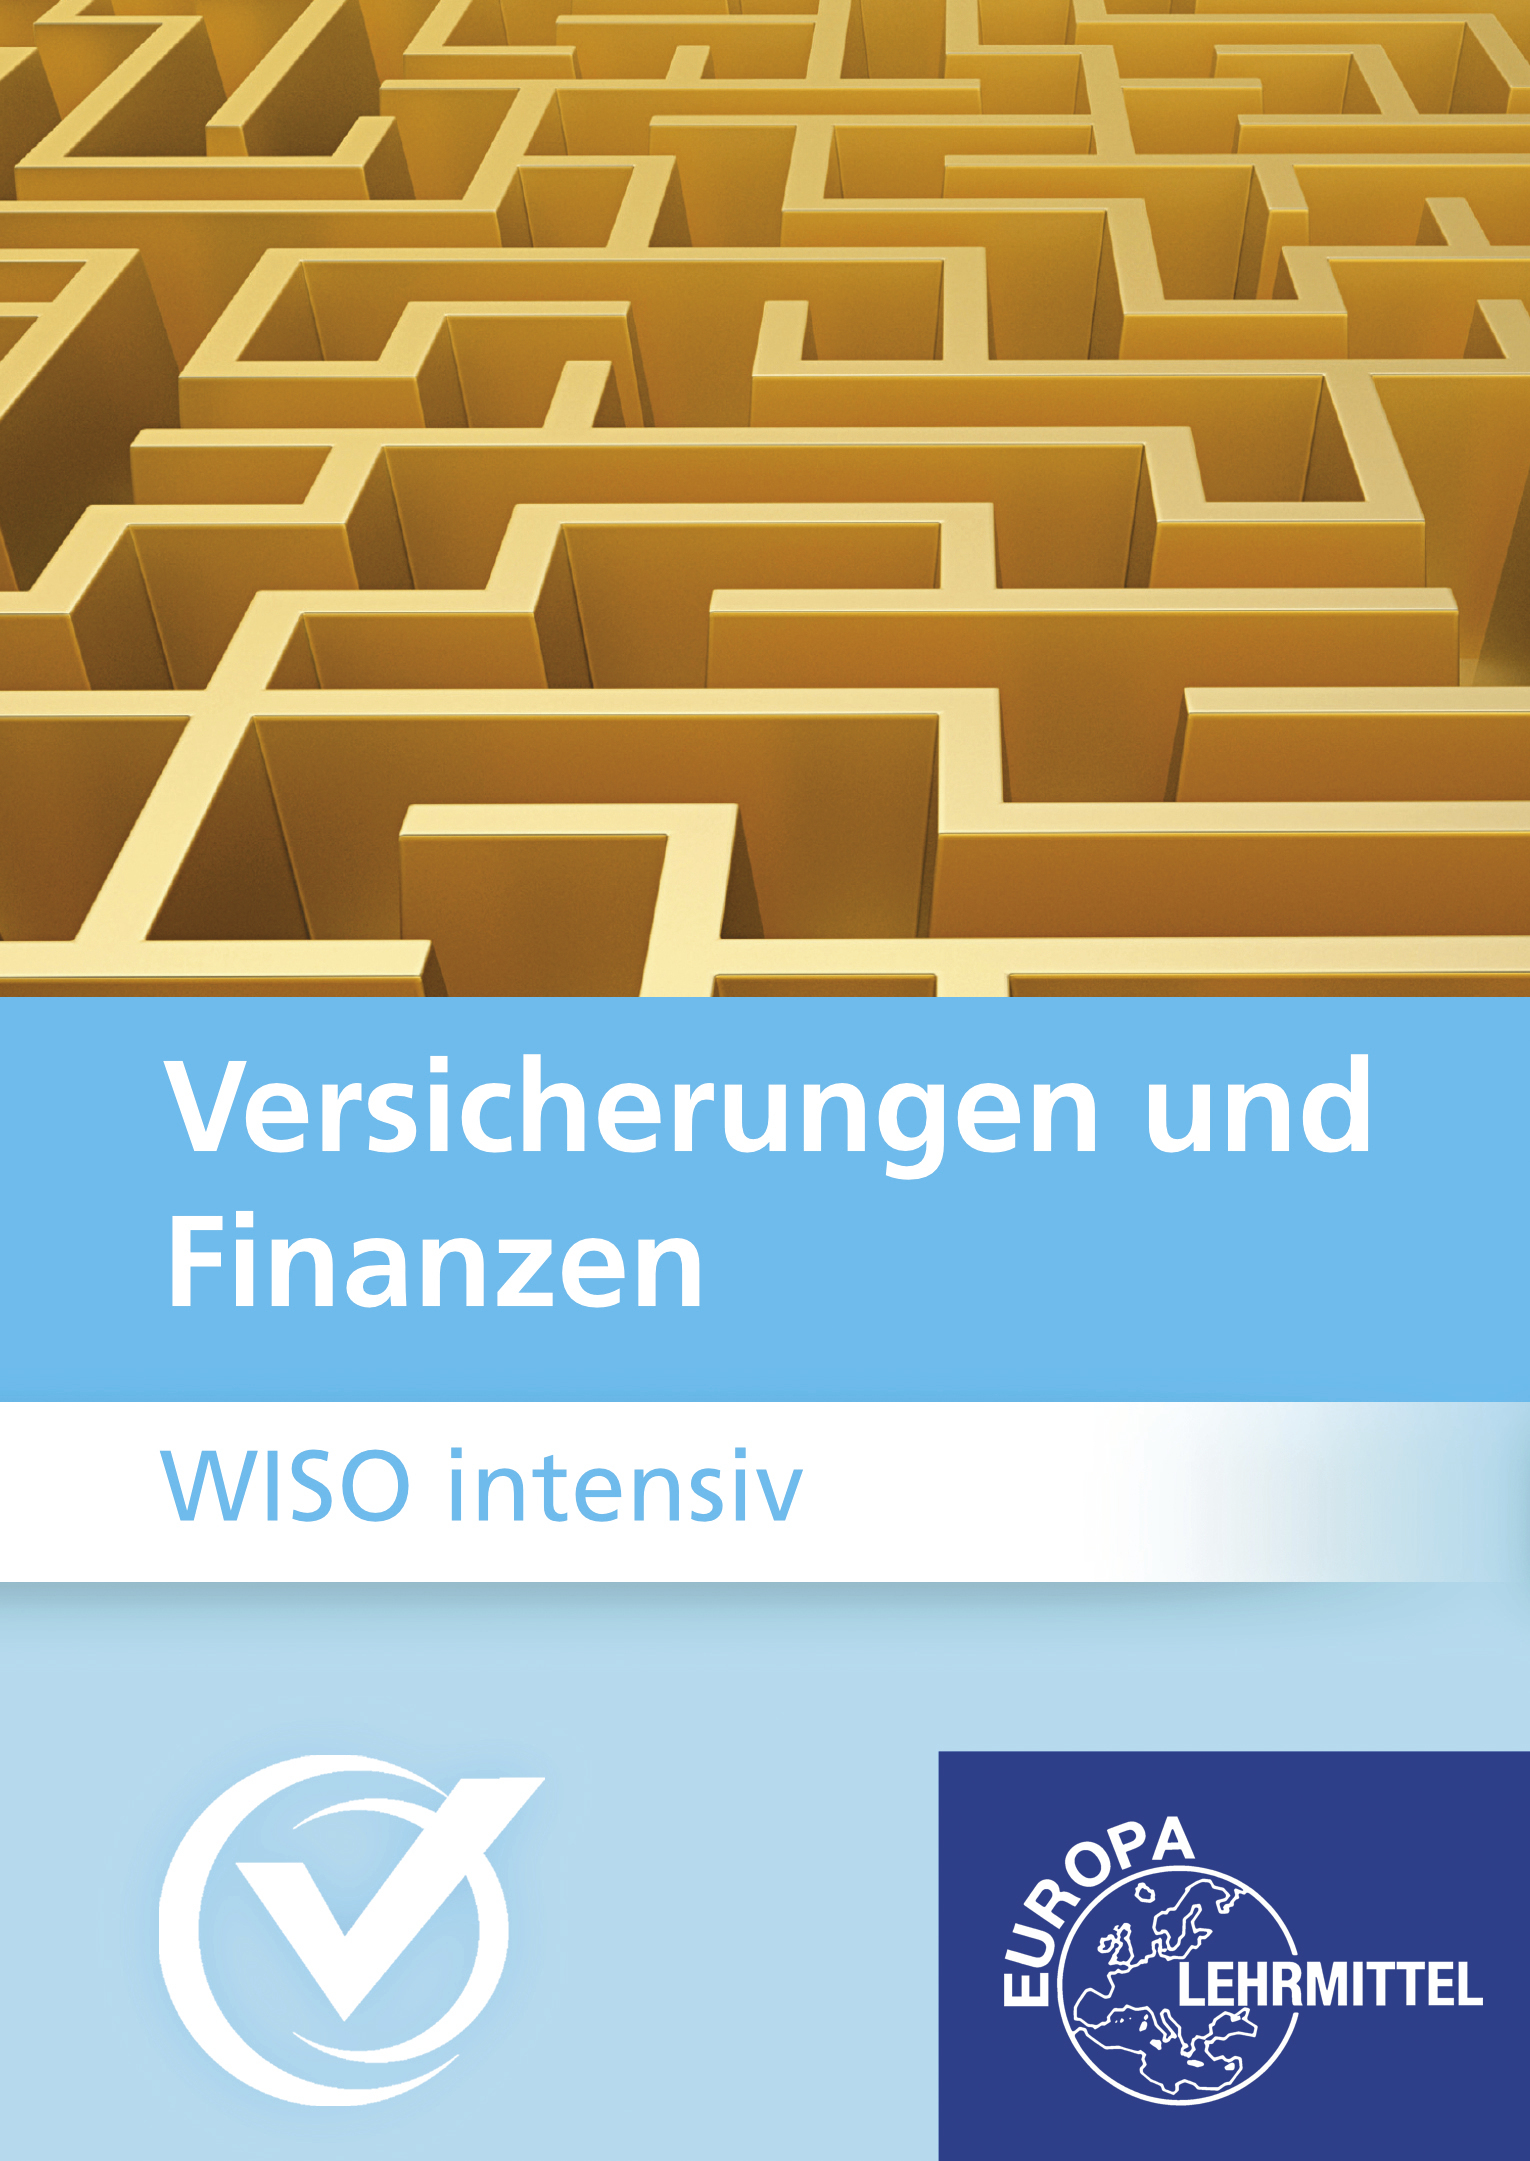 WISO intensiv für Kaufleute für Versicherungen und Finanzen